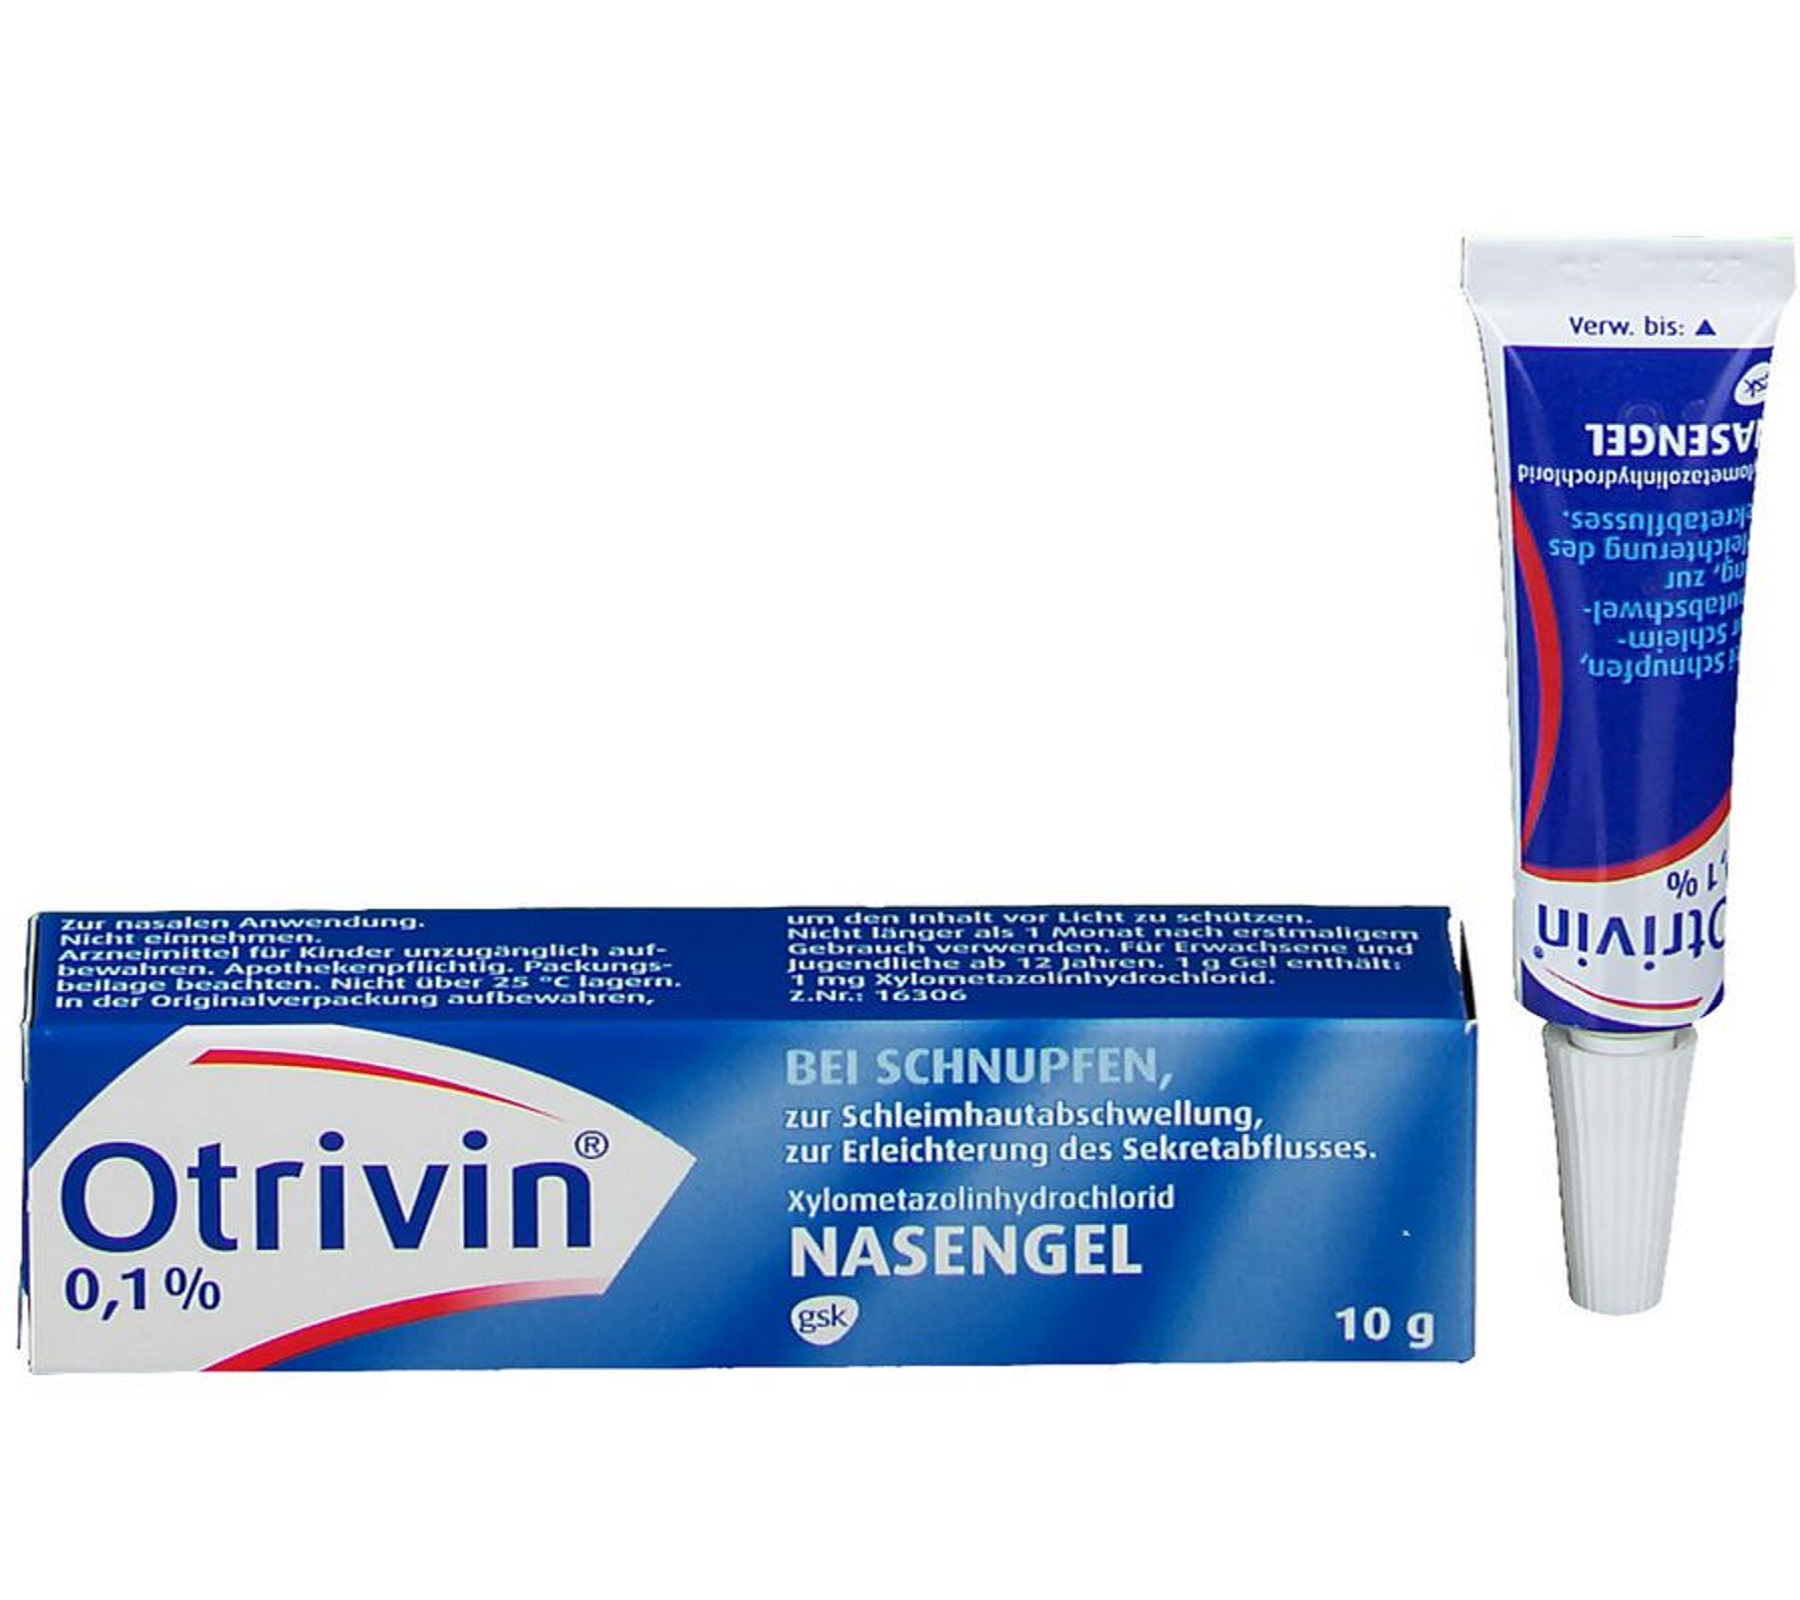 Otrivin 0,1 % - Nasengel